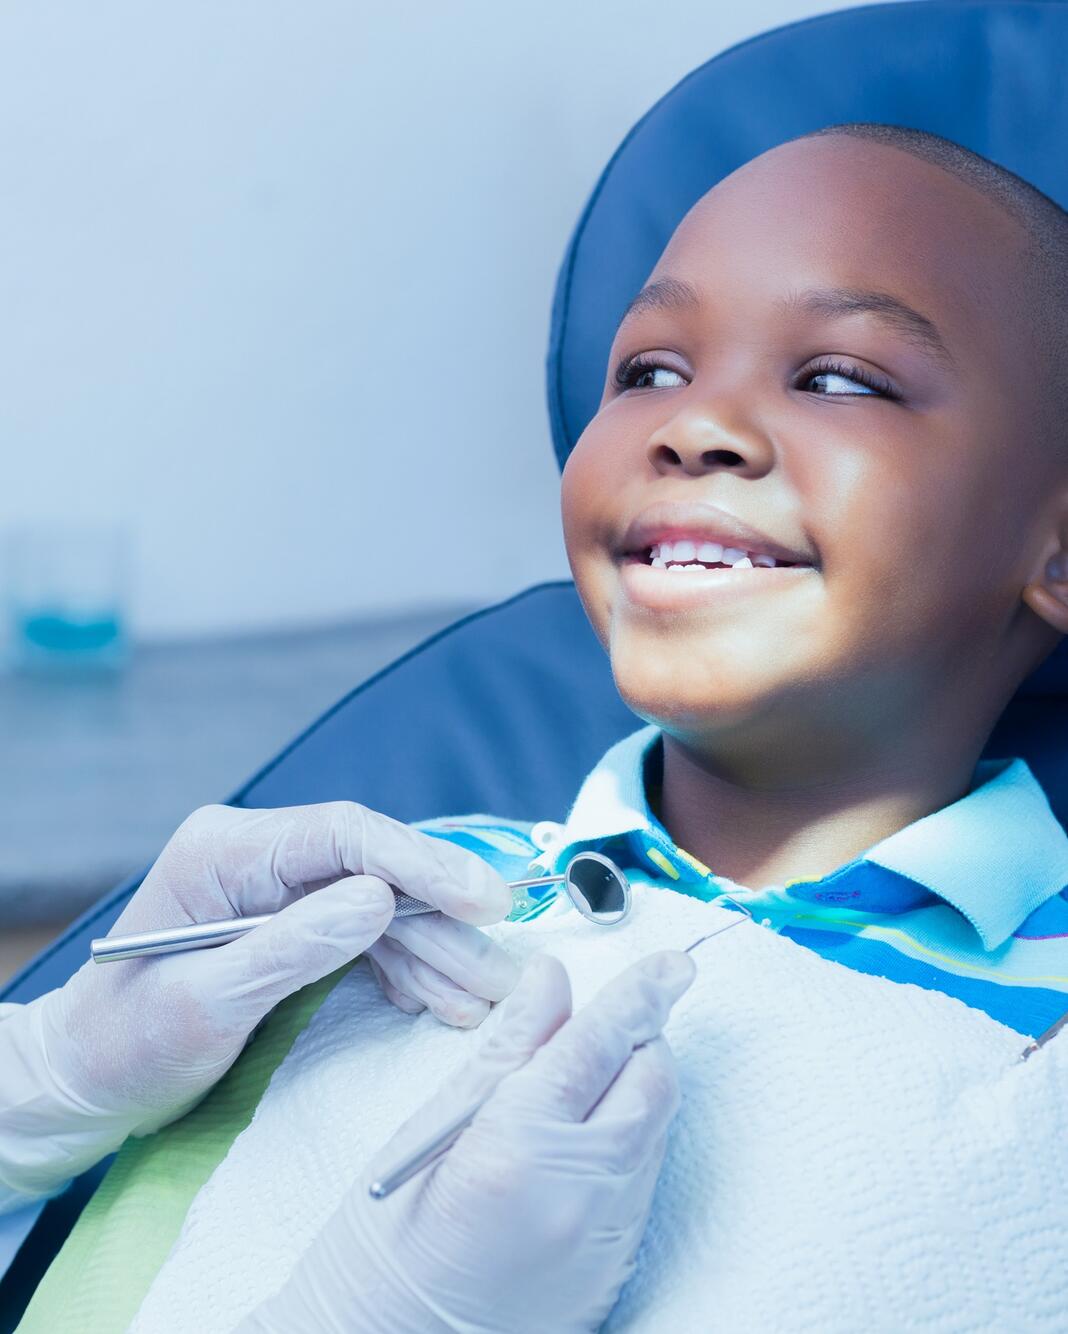 L'orthodontie dès 8 ans, c'est utile ? - Biba Magazine